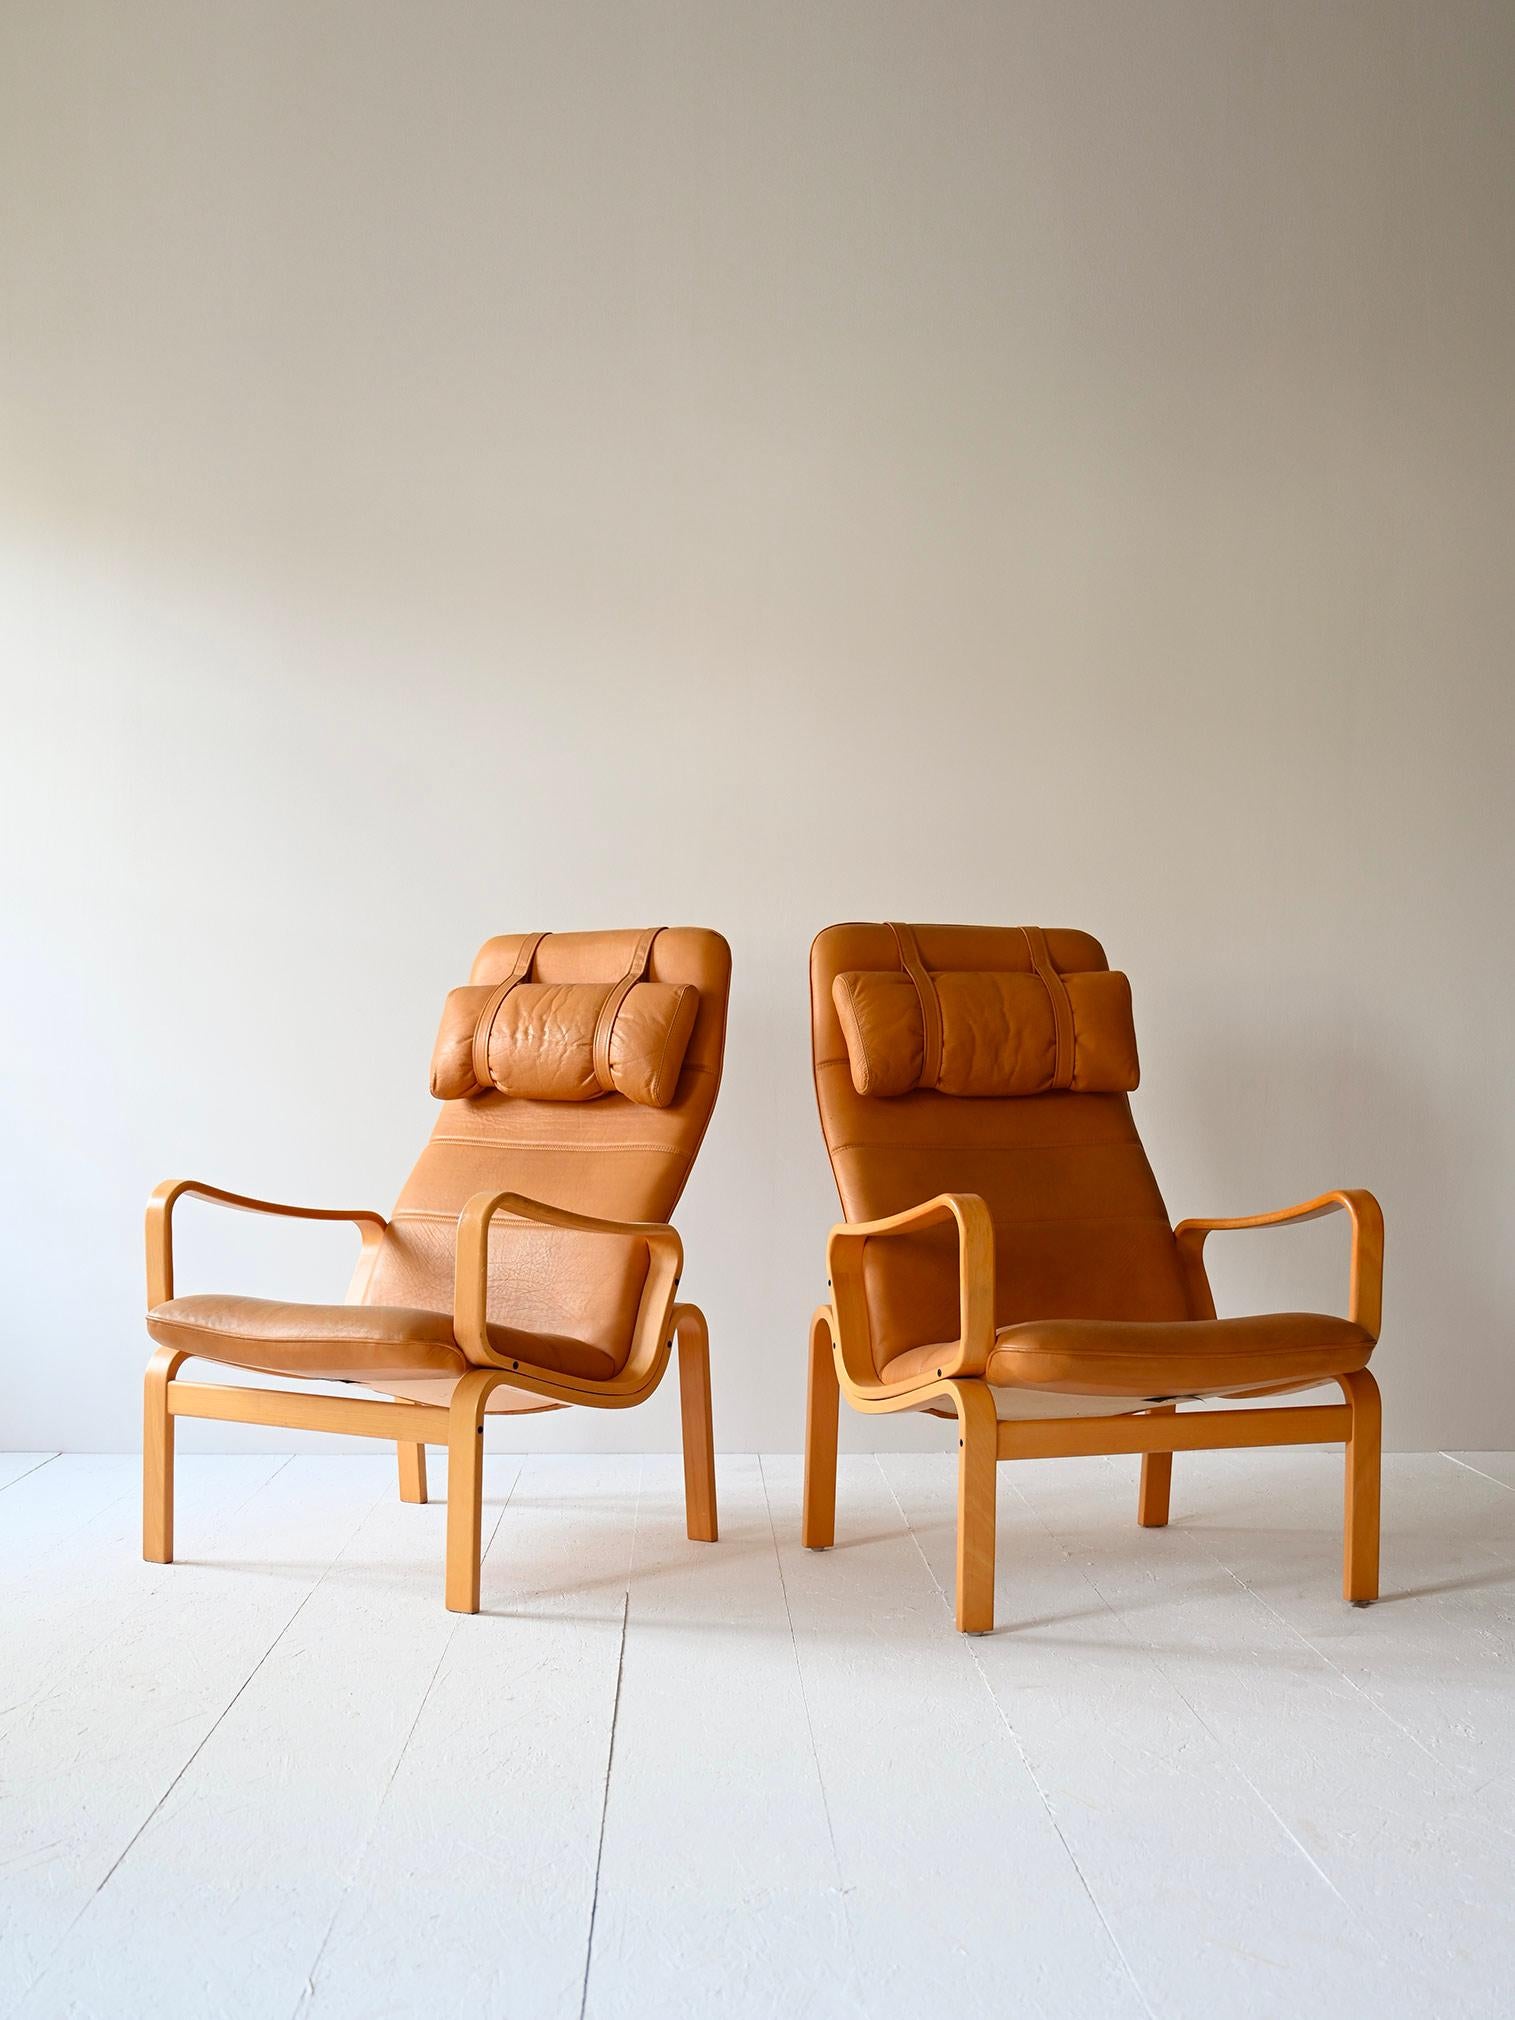 Paire de chaises vintage des années 1980 de fabrication scandinave.

Ces fauteuils élégants et confortables se composent d'un cadre incurvé en bois de bouleau et d'une assise rembourrée recouverte de cuir beige. Les formes sinueuses rappellent le